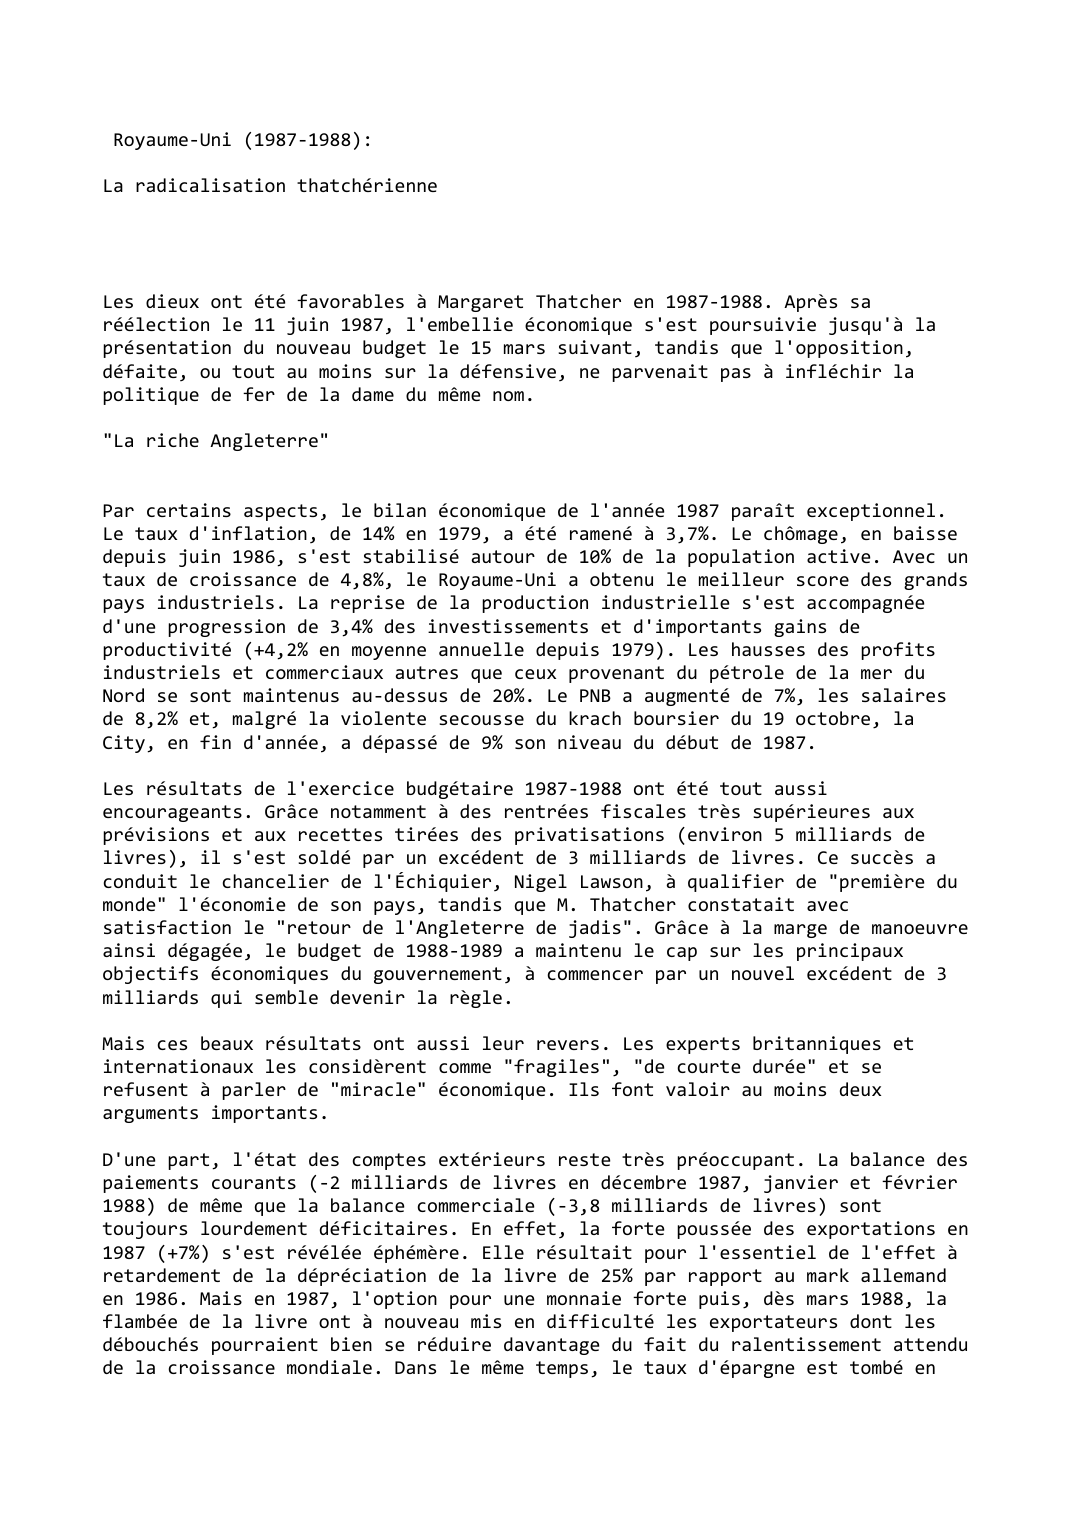 Prévisualisation du document Royaume-Uni (1987-1988):

La radicalisation thatchérienne